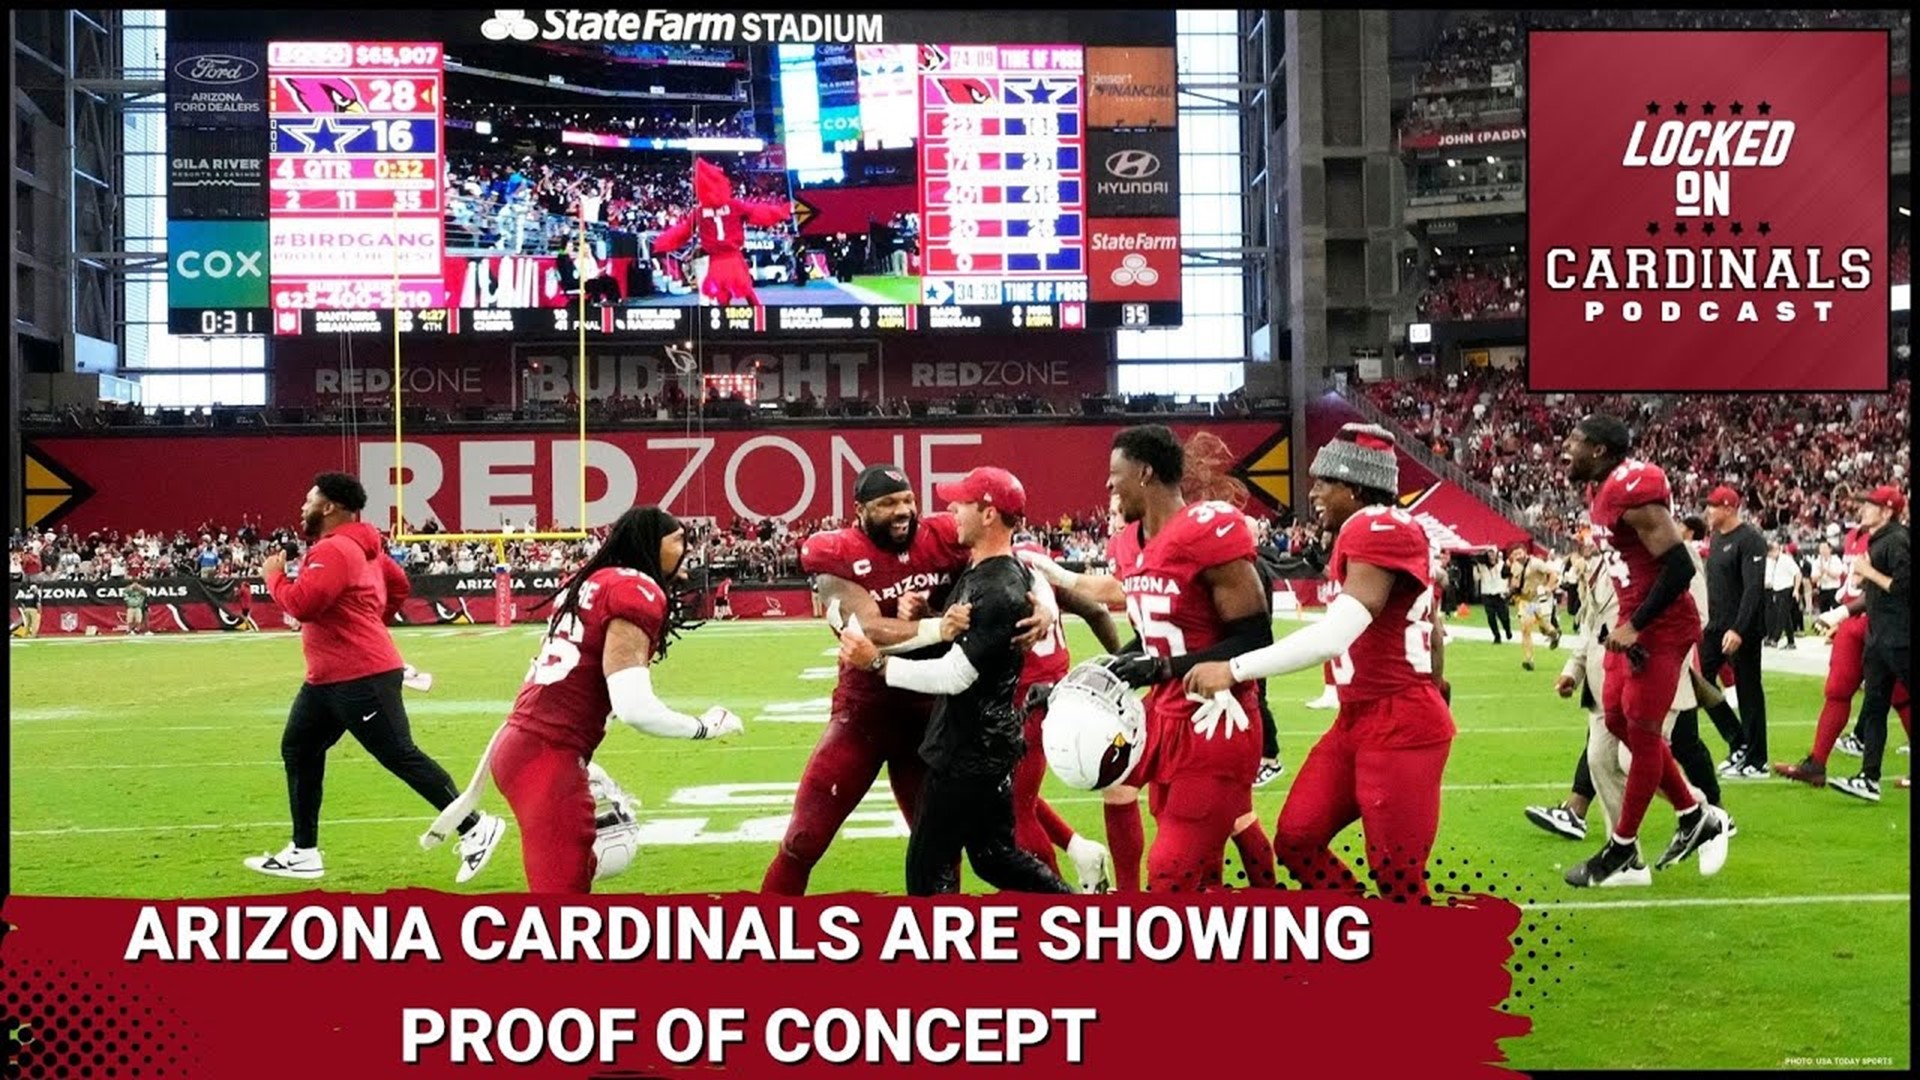 arizona cardinals and 49ers game